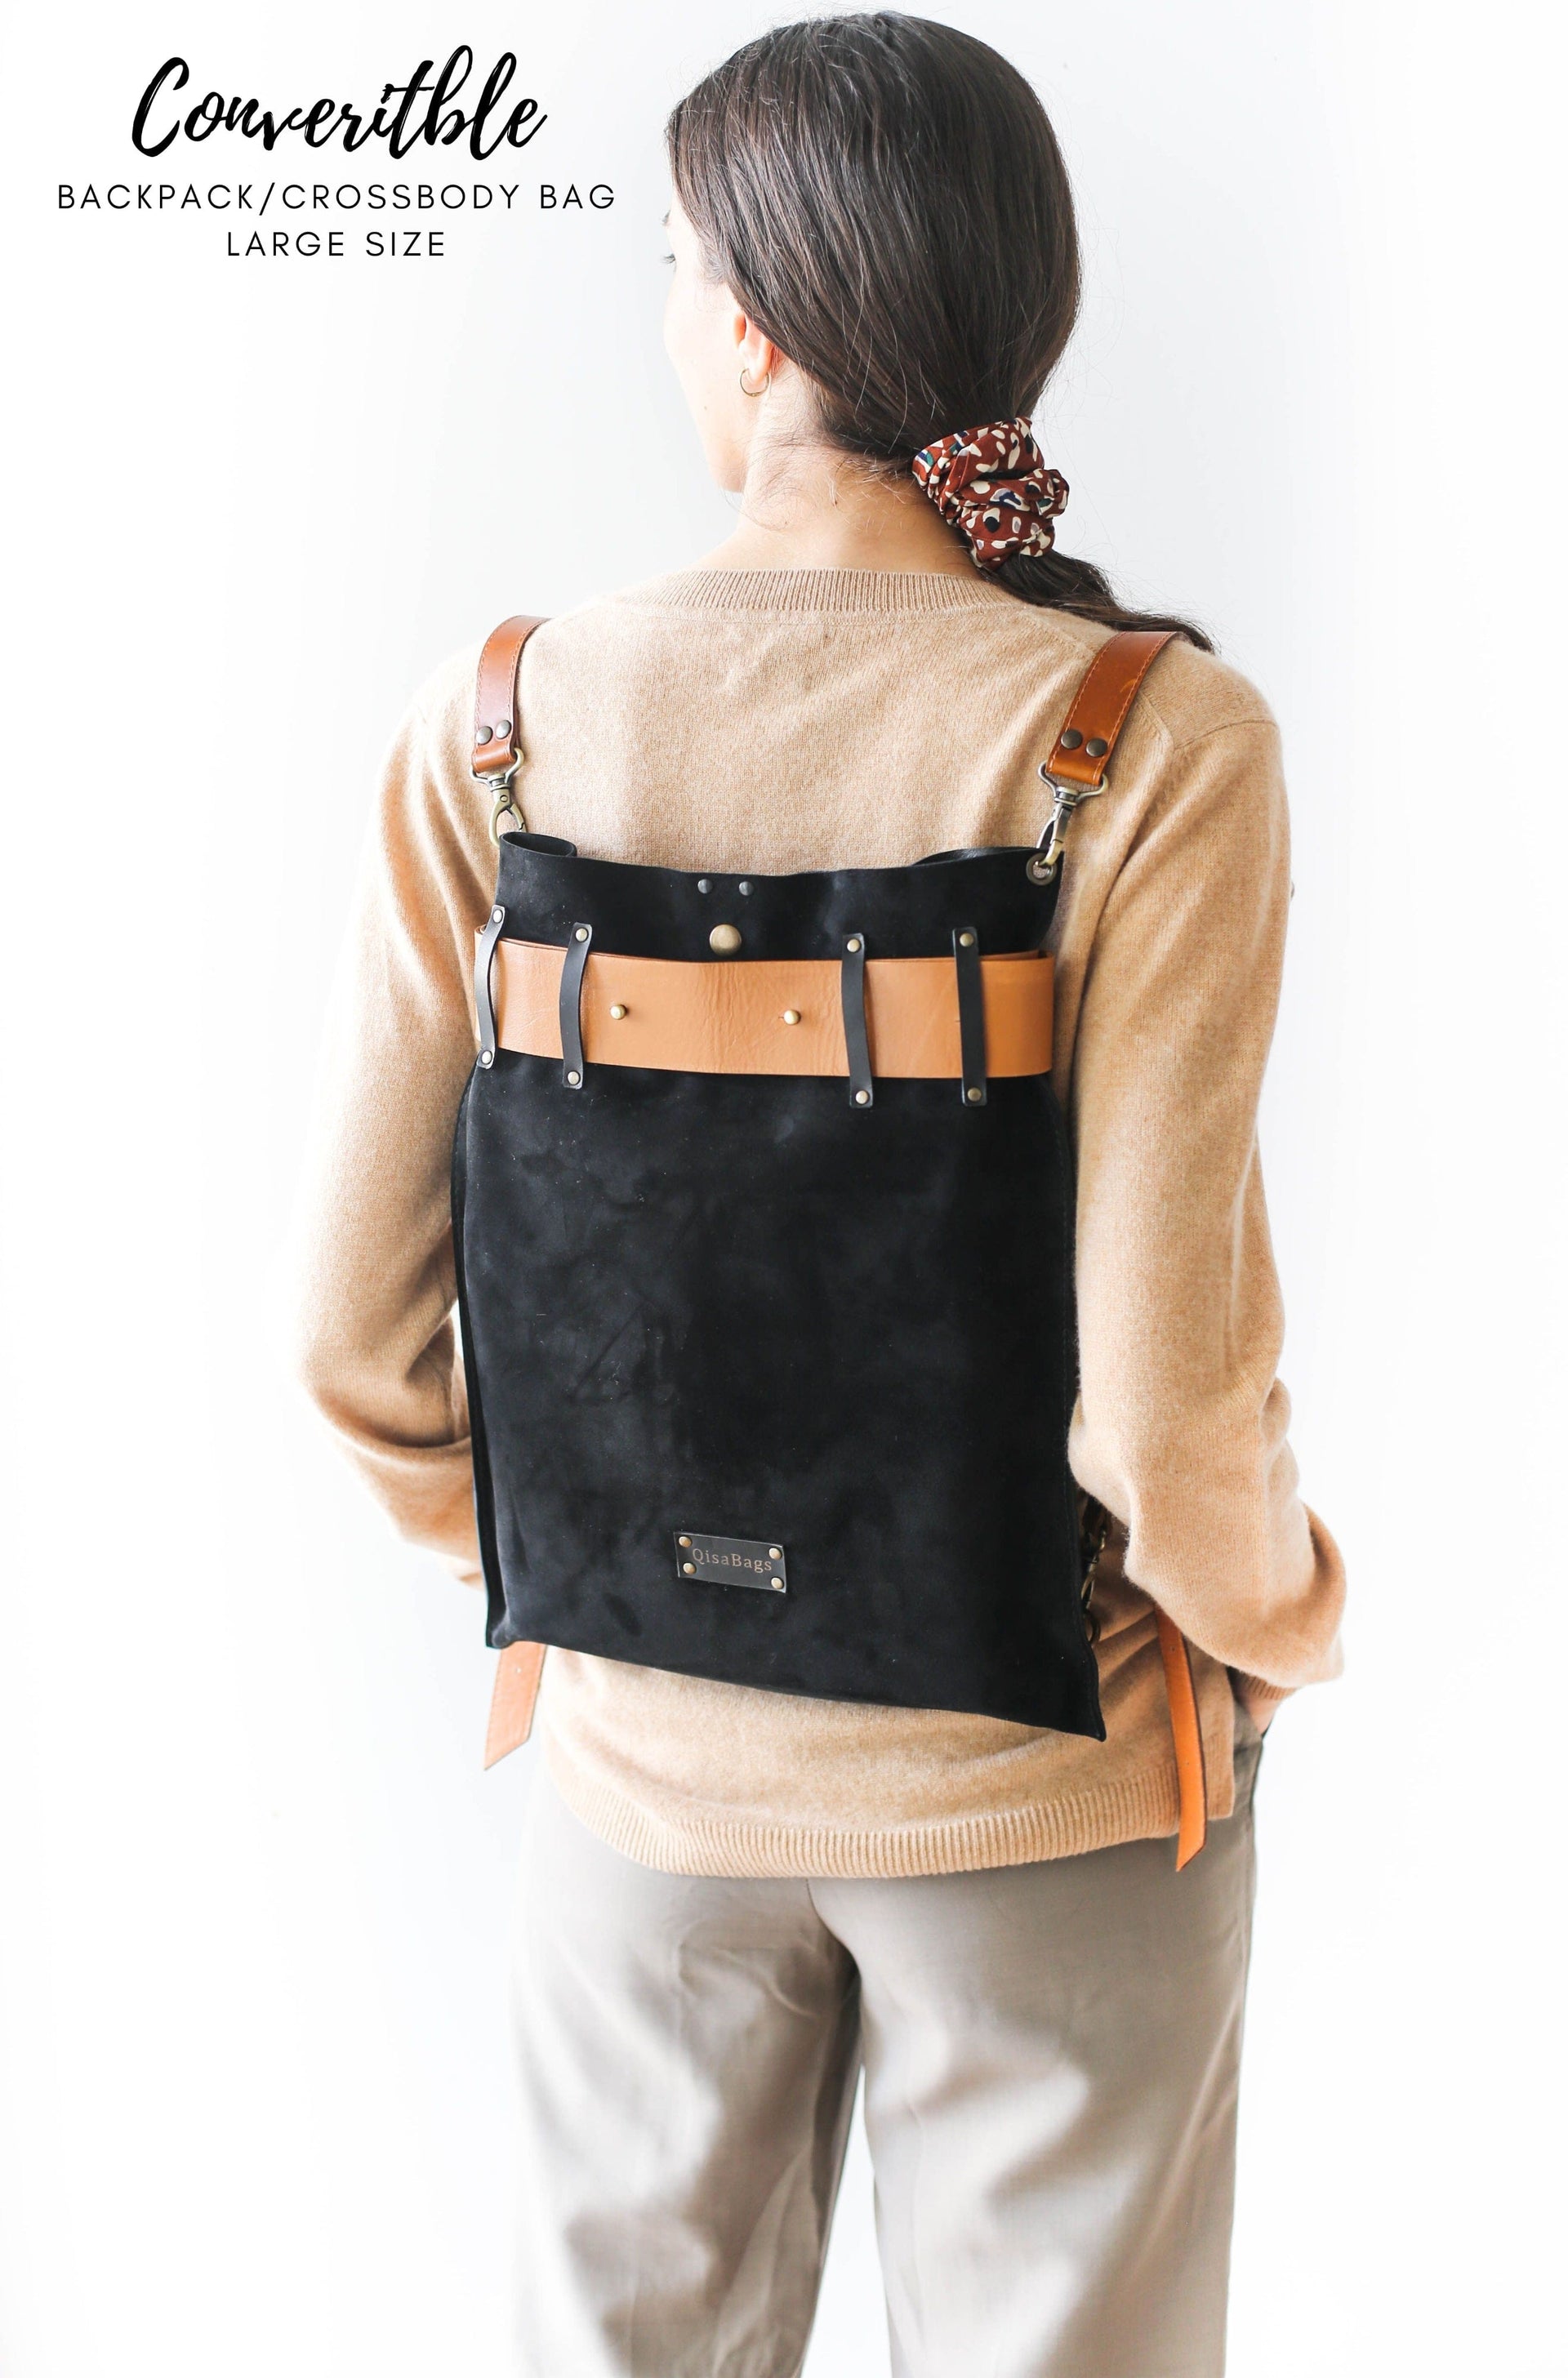 Stylish leather backpack purse